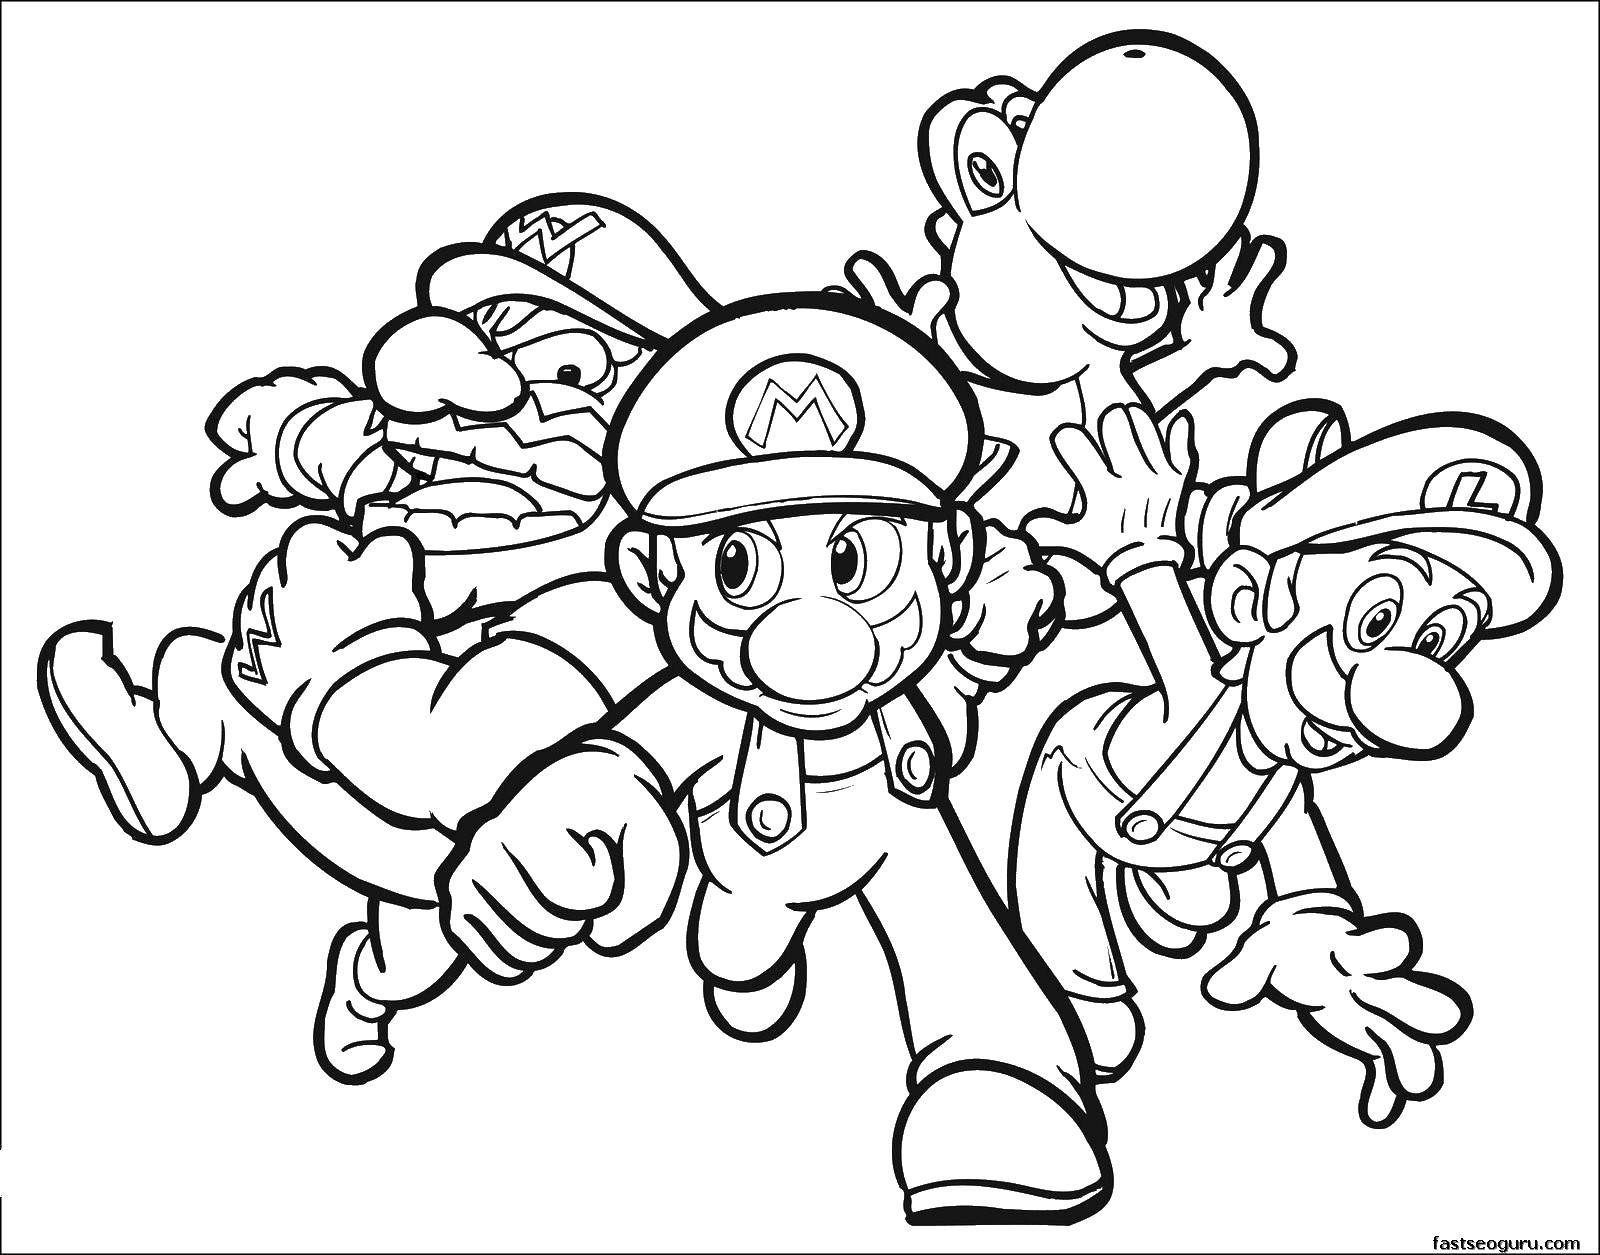 Coloring Mario, wario and Luigi. Category games. Tags:  Games, Mario.